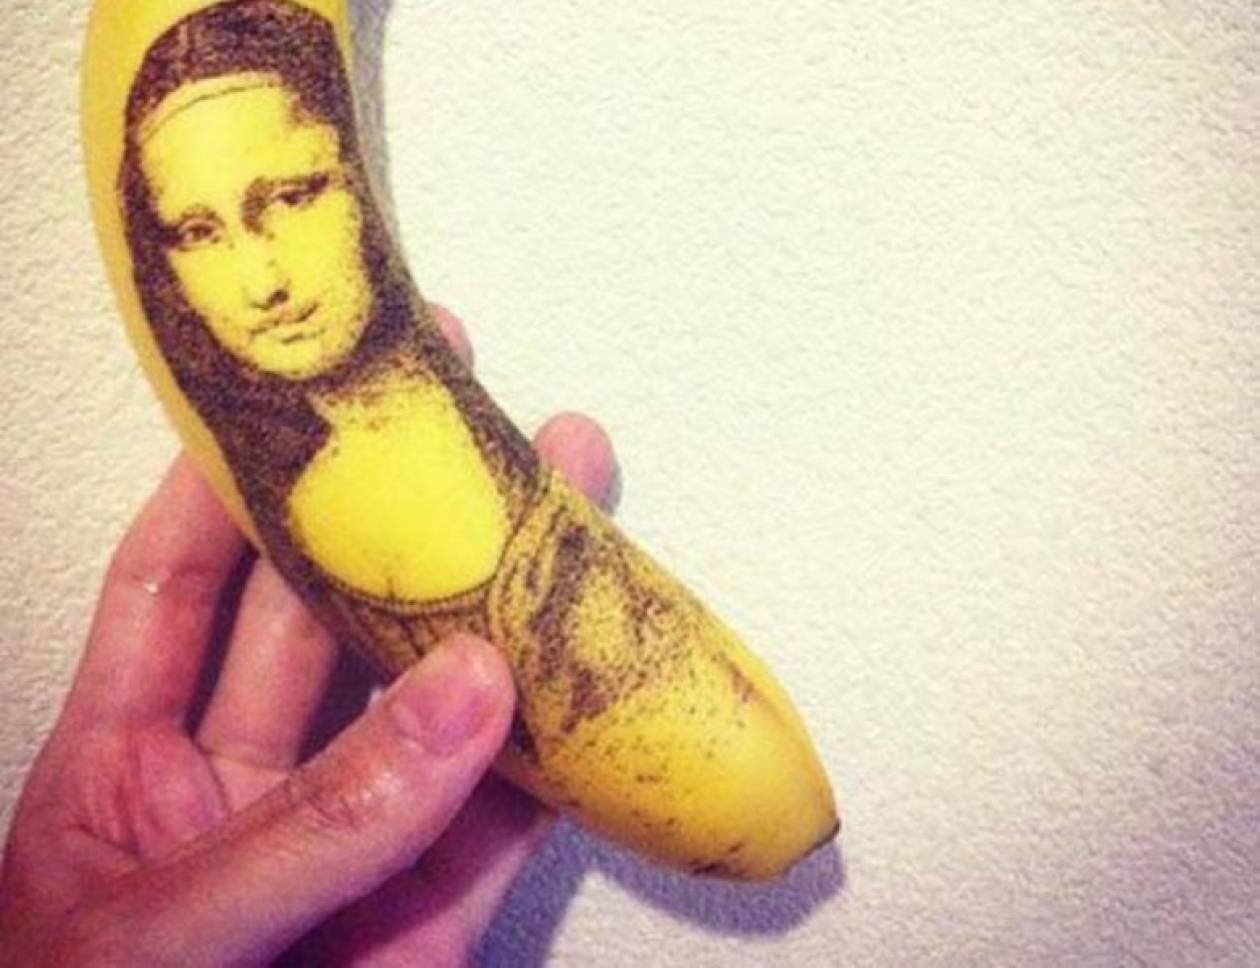 Δείτε μία διαφορετική συλλογή από τατουάζ σε... μπανάνες (pics)